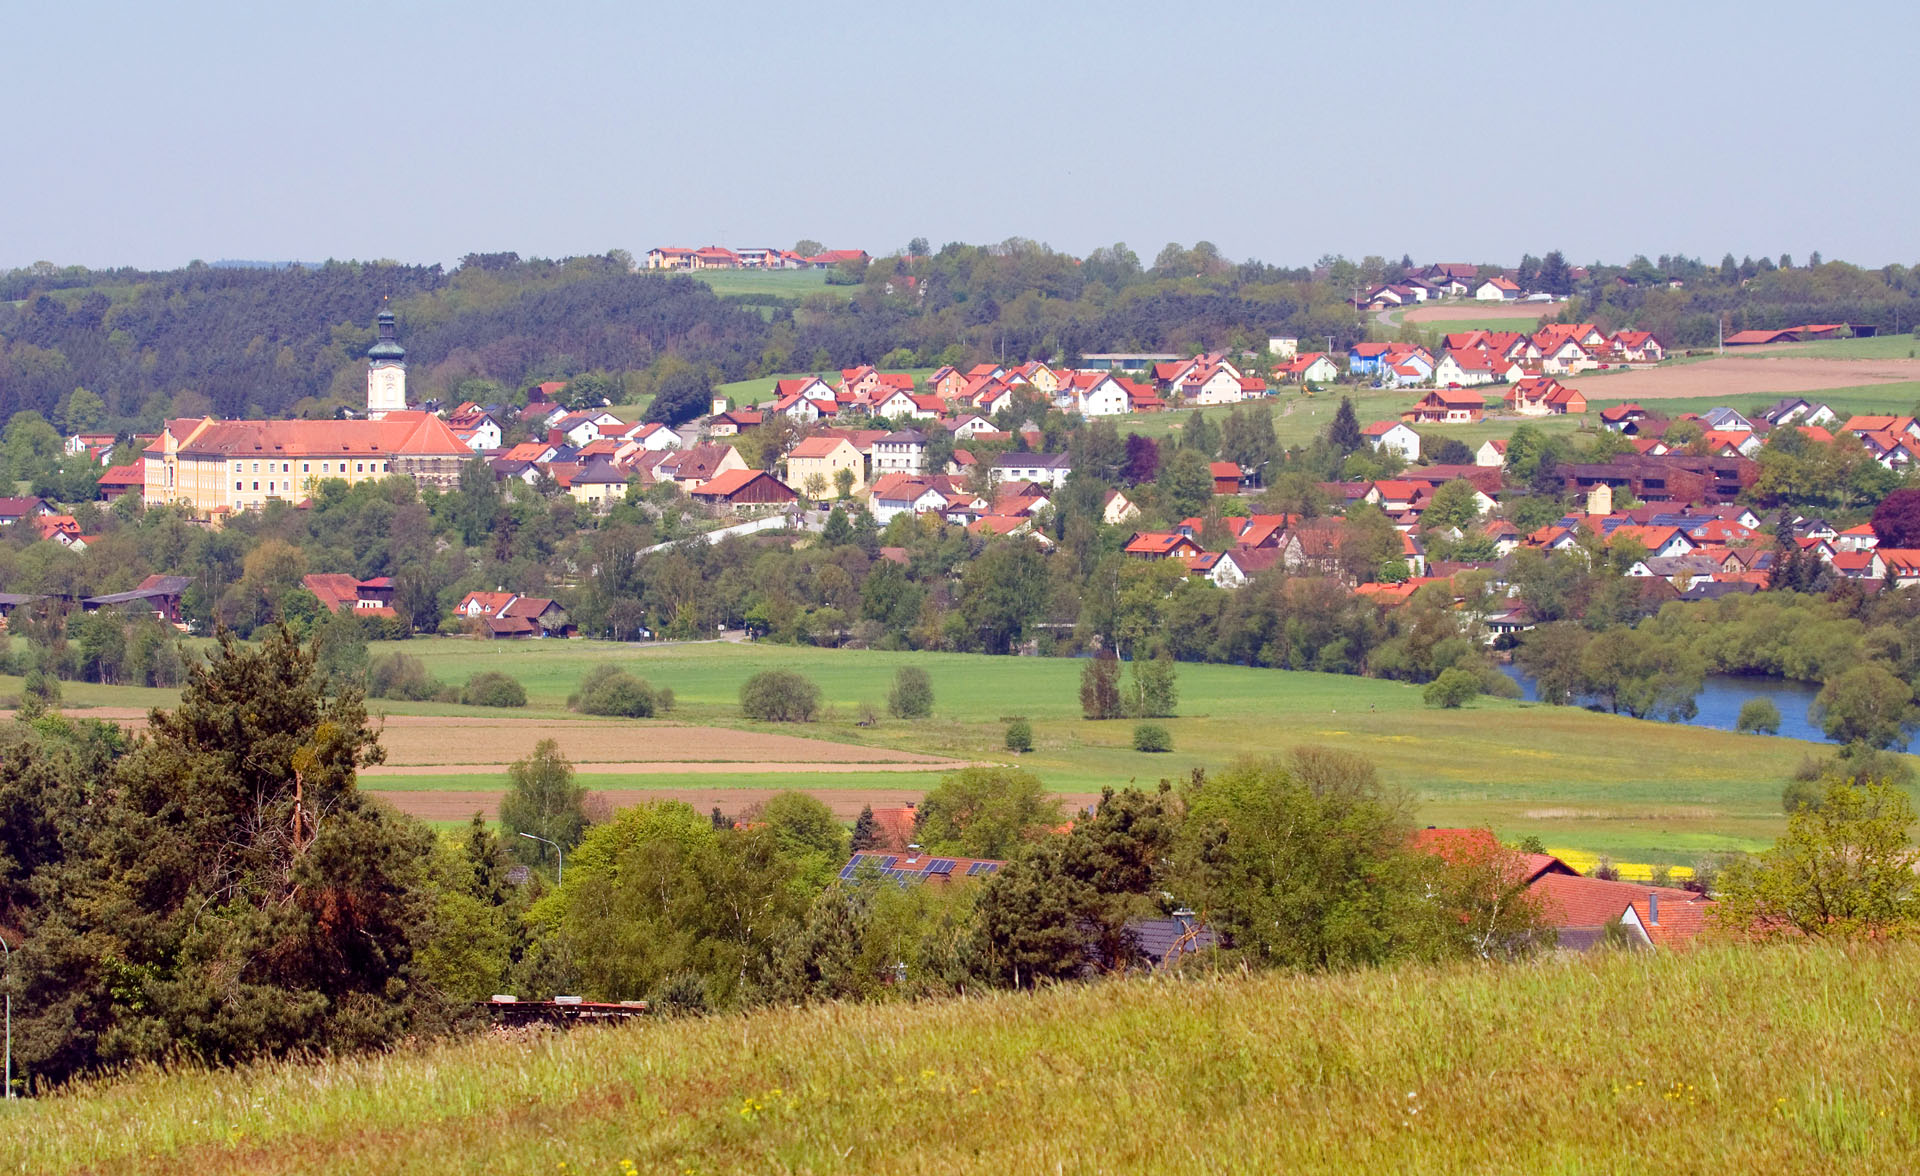 Gemeinde Walderbach